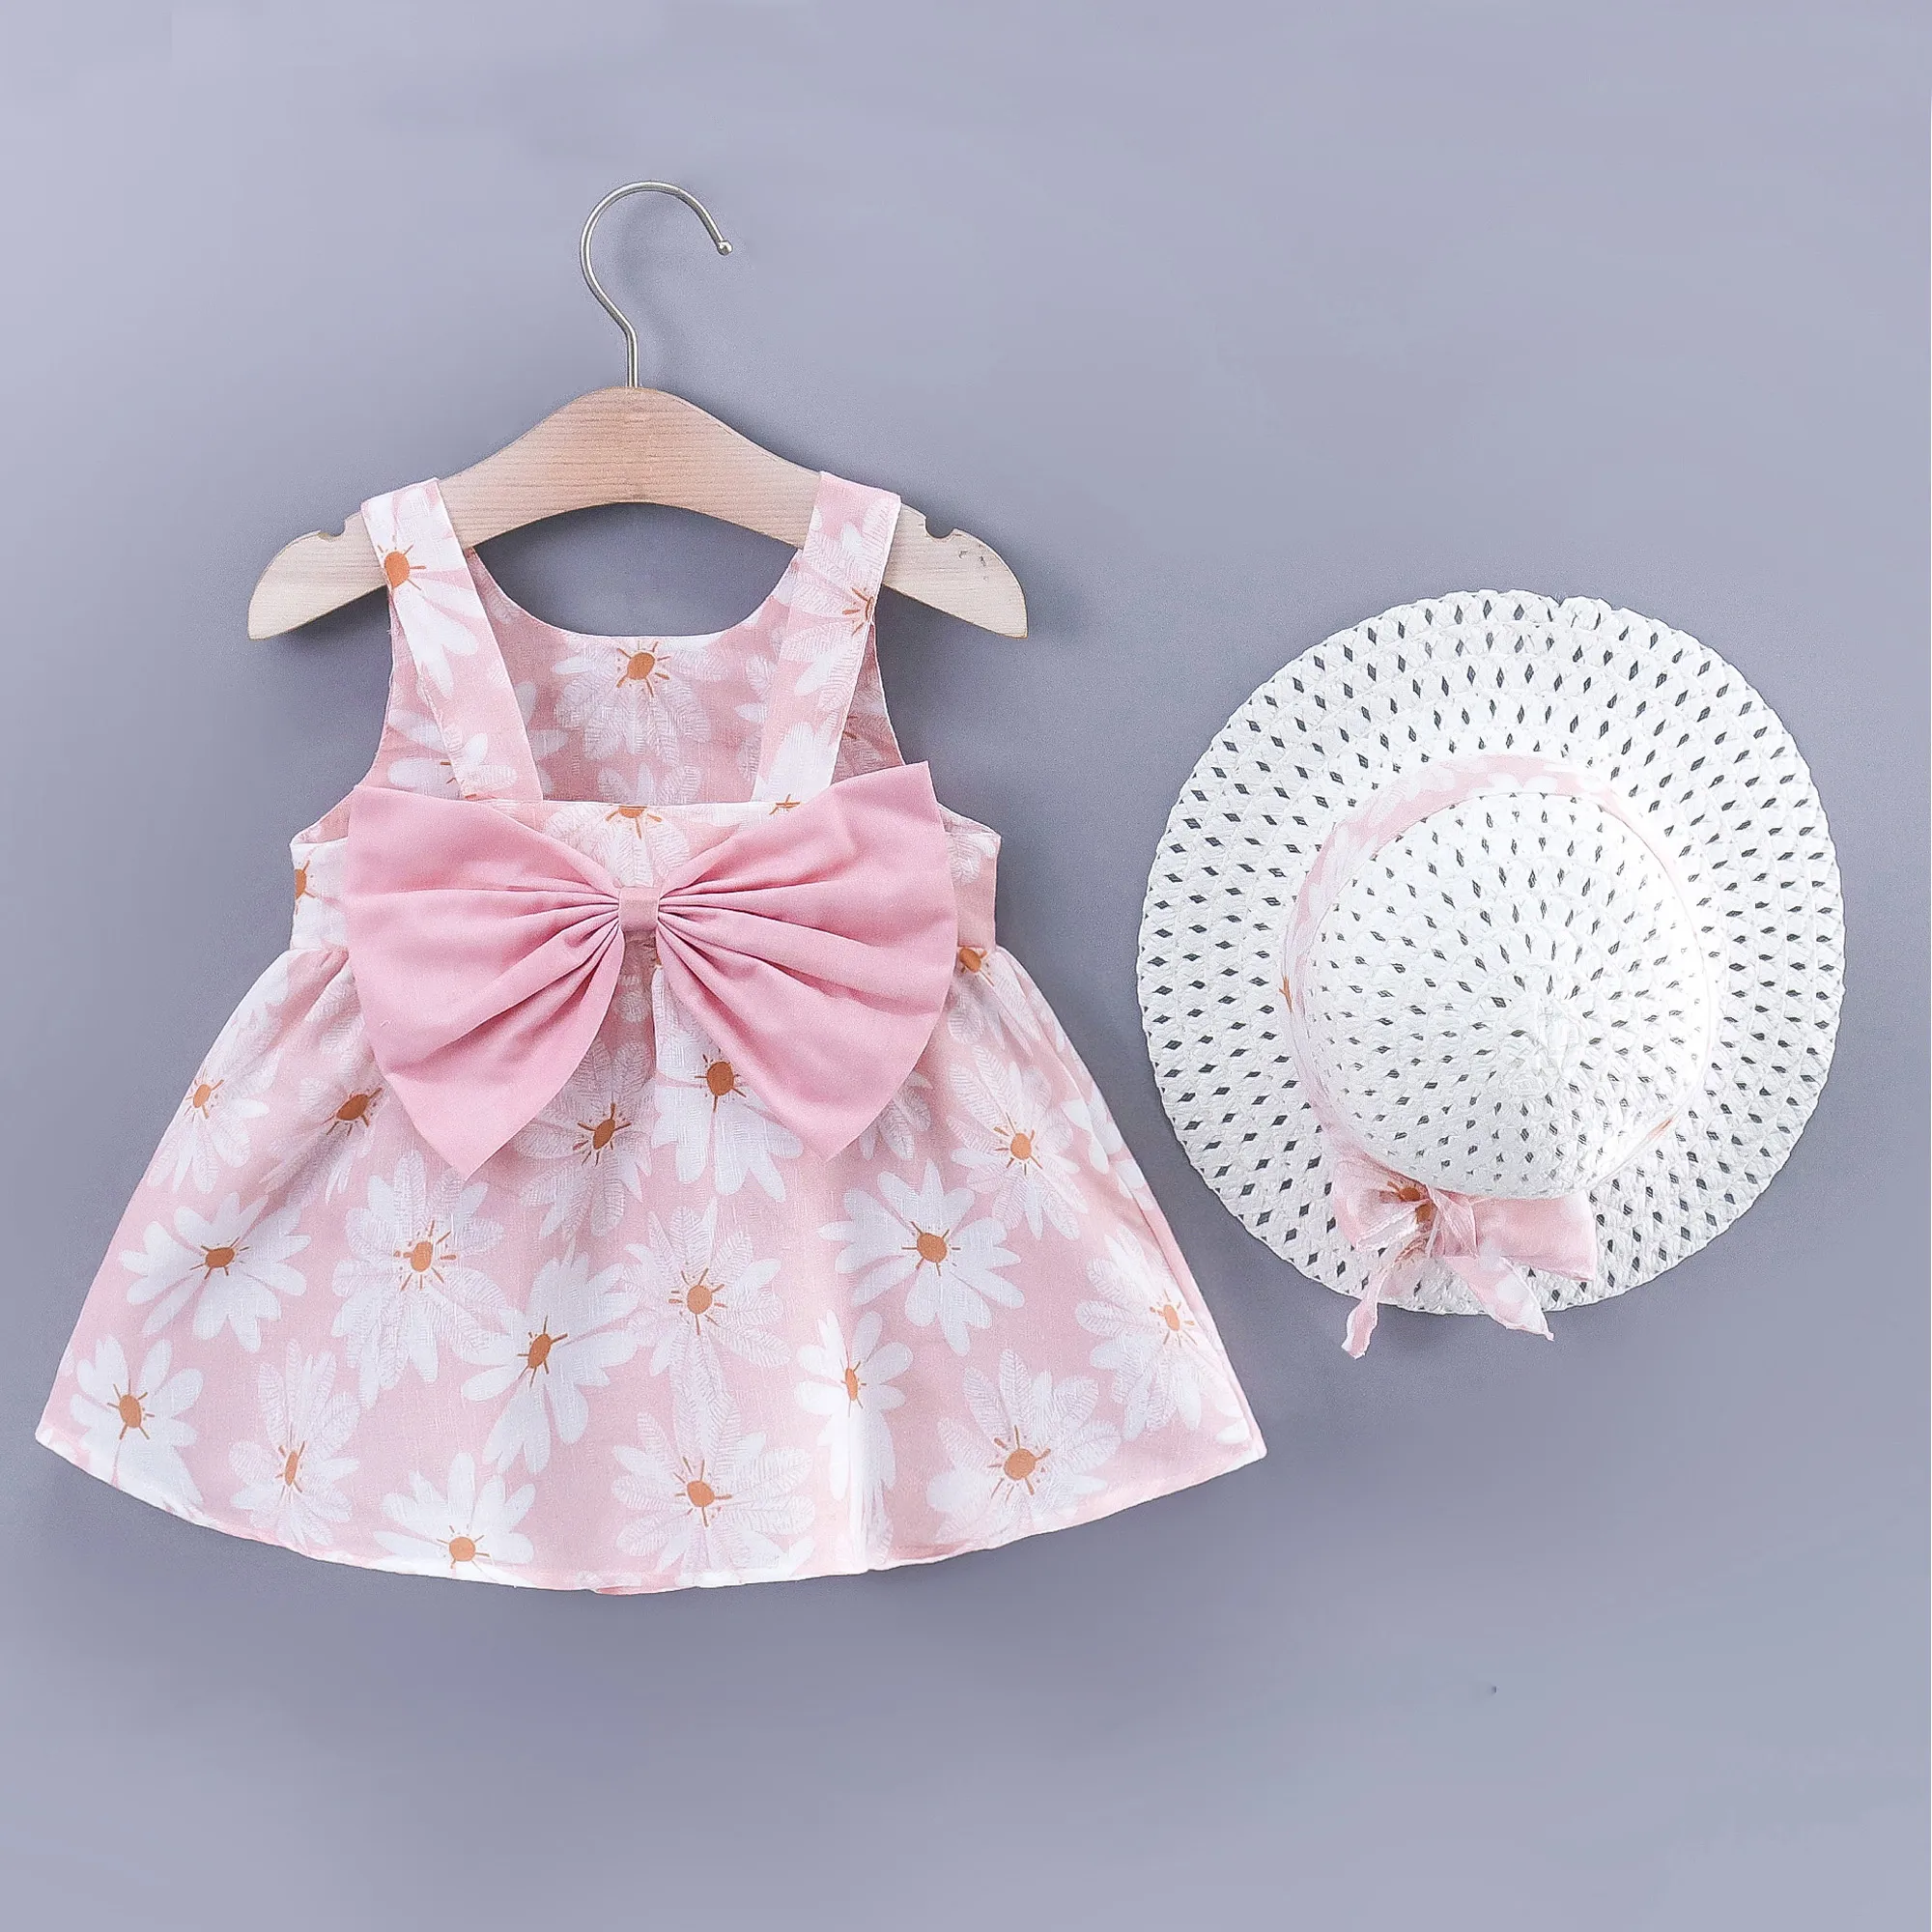 

Little Daisy 2pc Dress Set for Baby Girls - Soft Lightweight Cotton-Linen Fabric, Back Bowknot Design